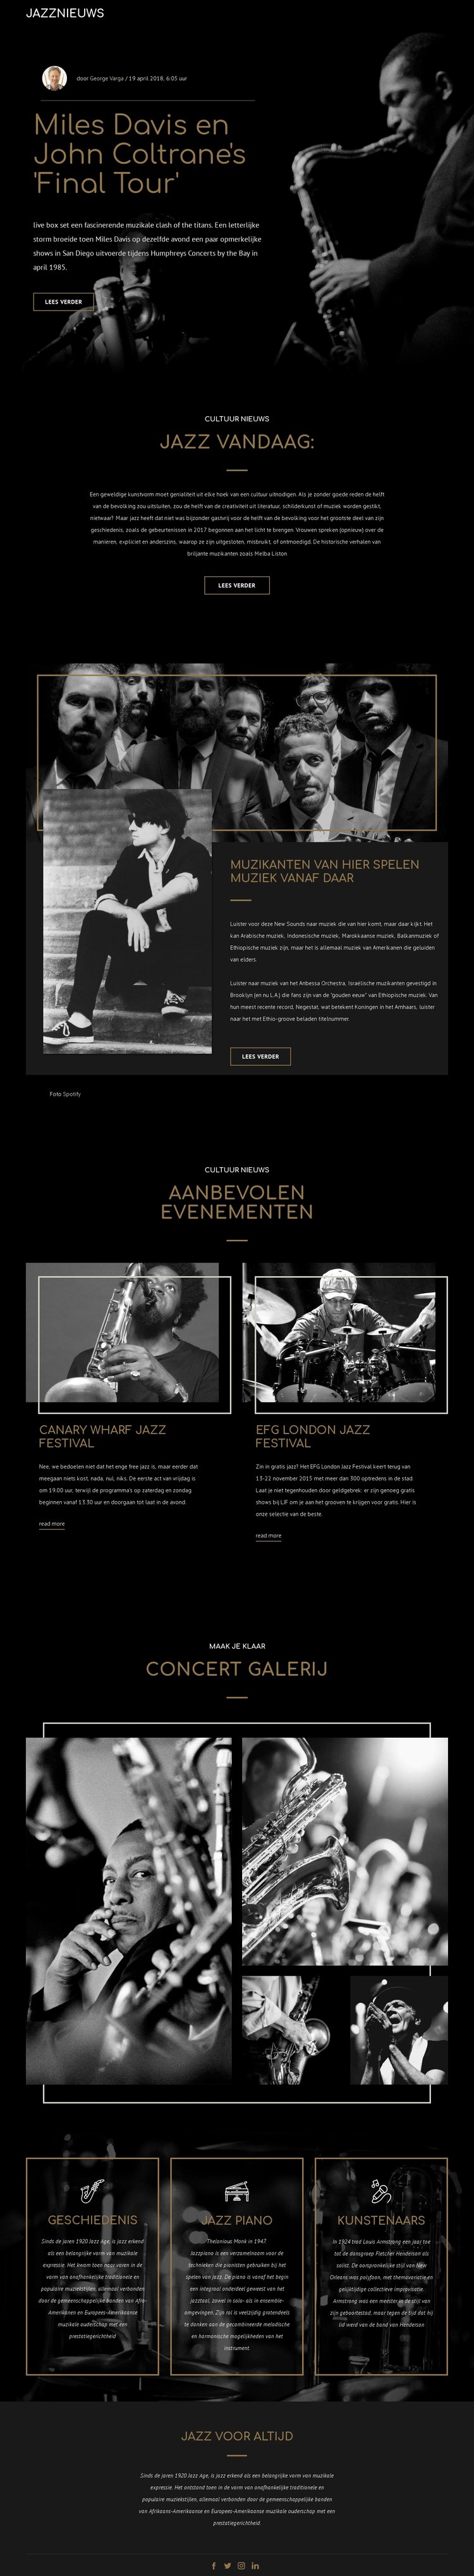 Legengs van jazzmuziek Website ontwerp